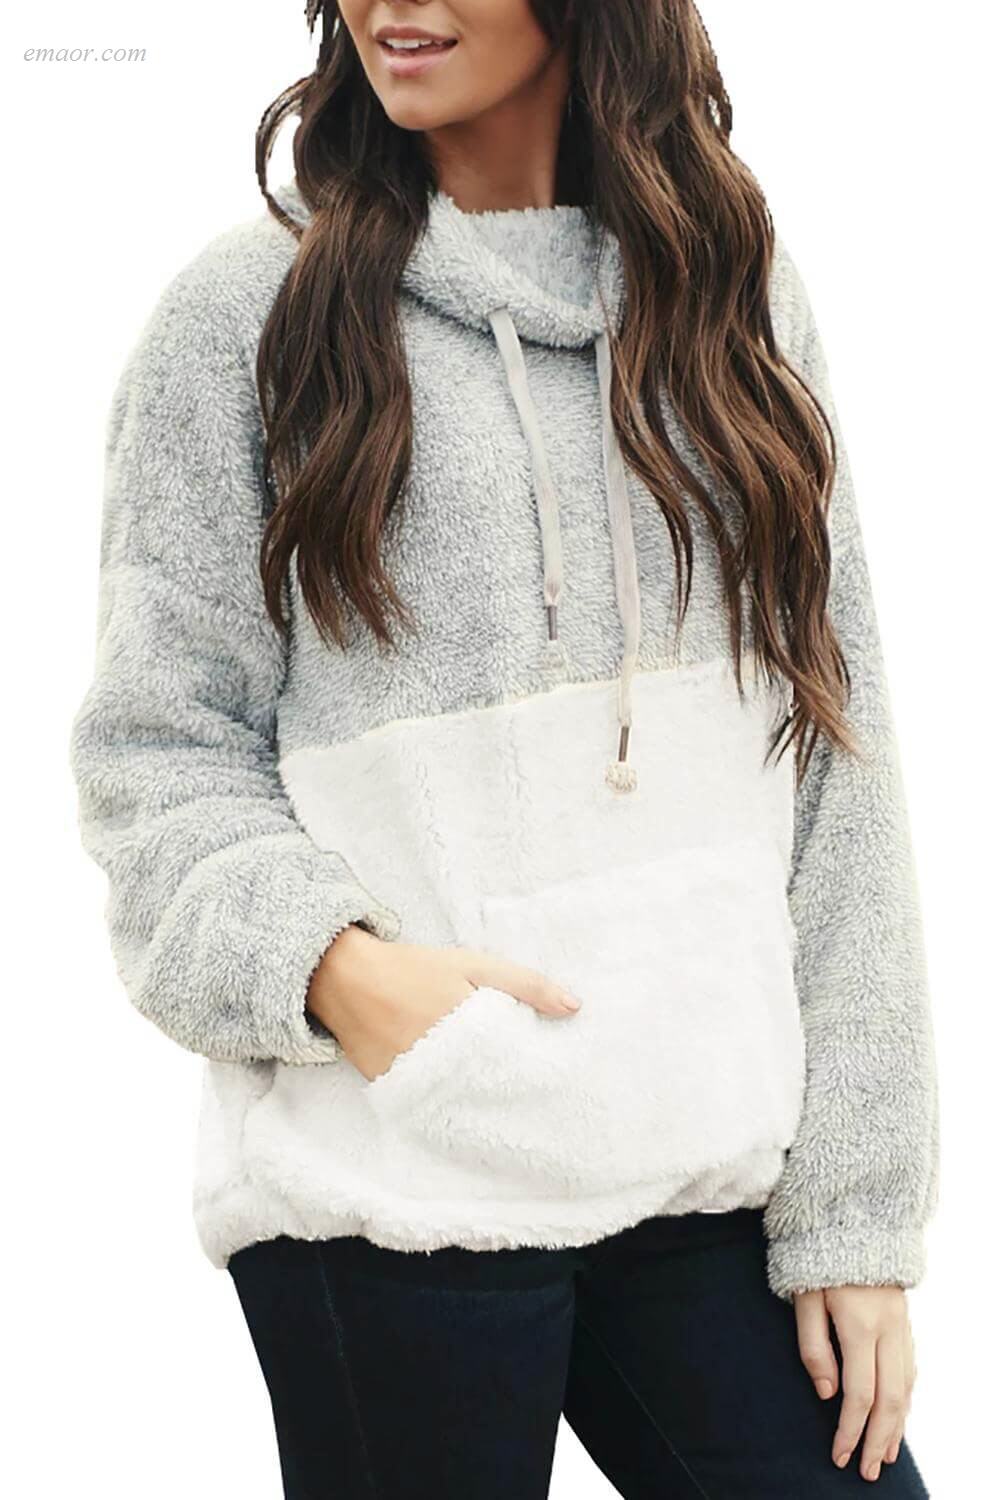 Outerwear Wholesale Best Affordable Women's Sweatshirts & Hoodies Side Story Sweatshirt Polar Parka Outerwear